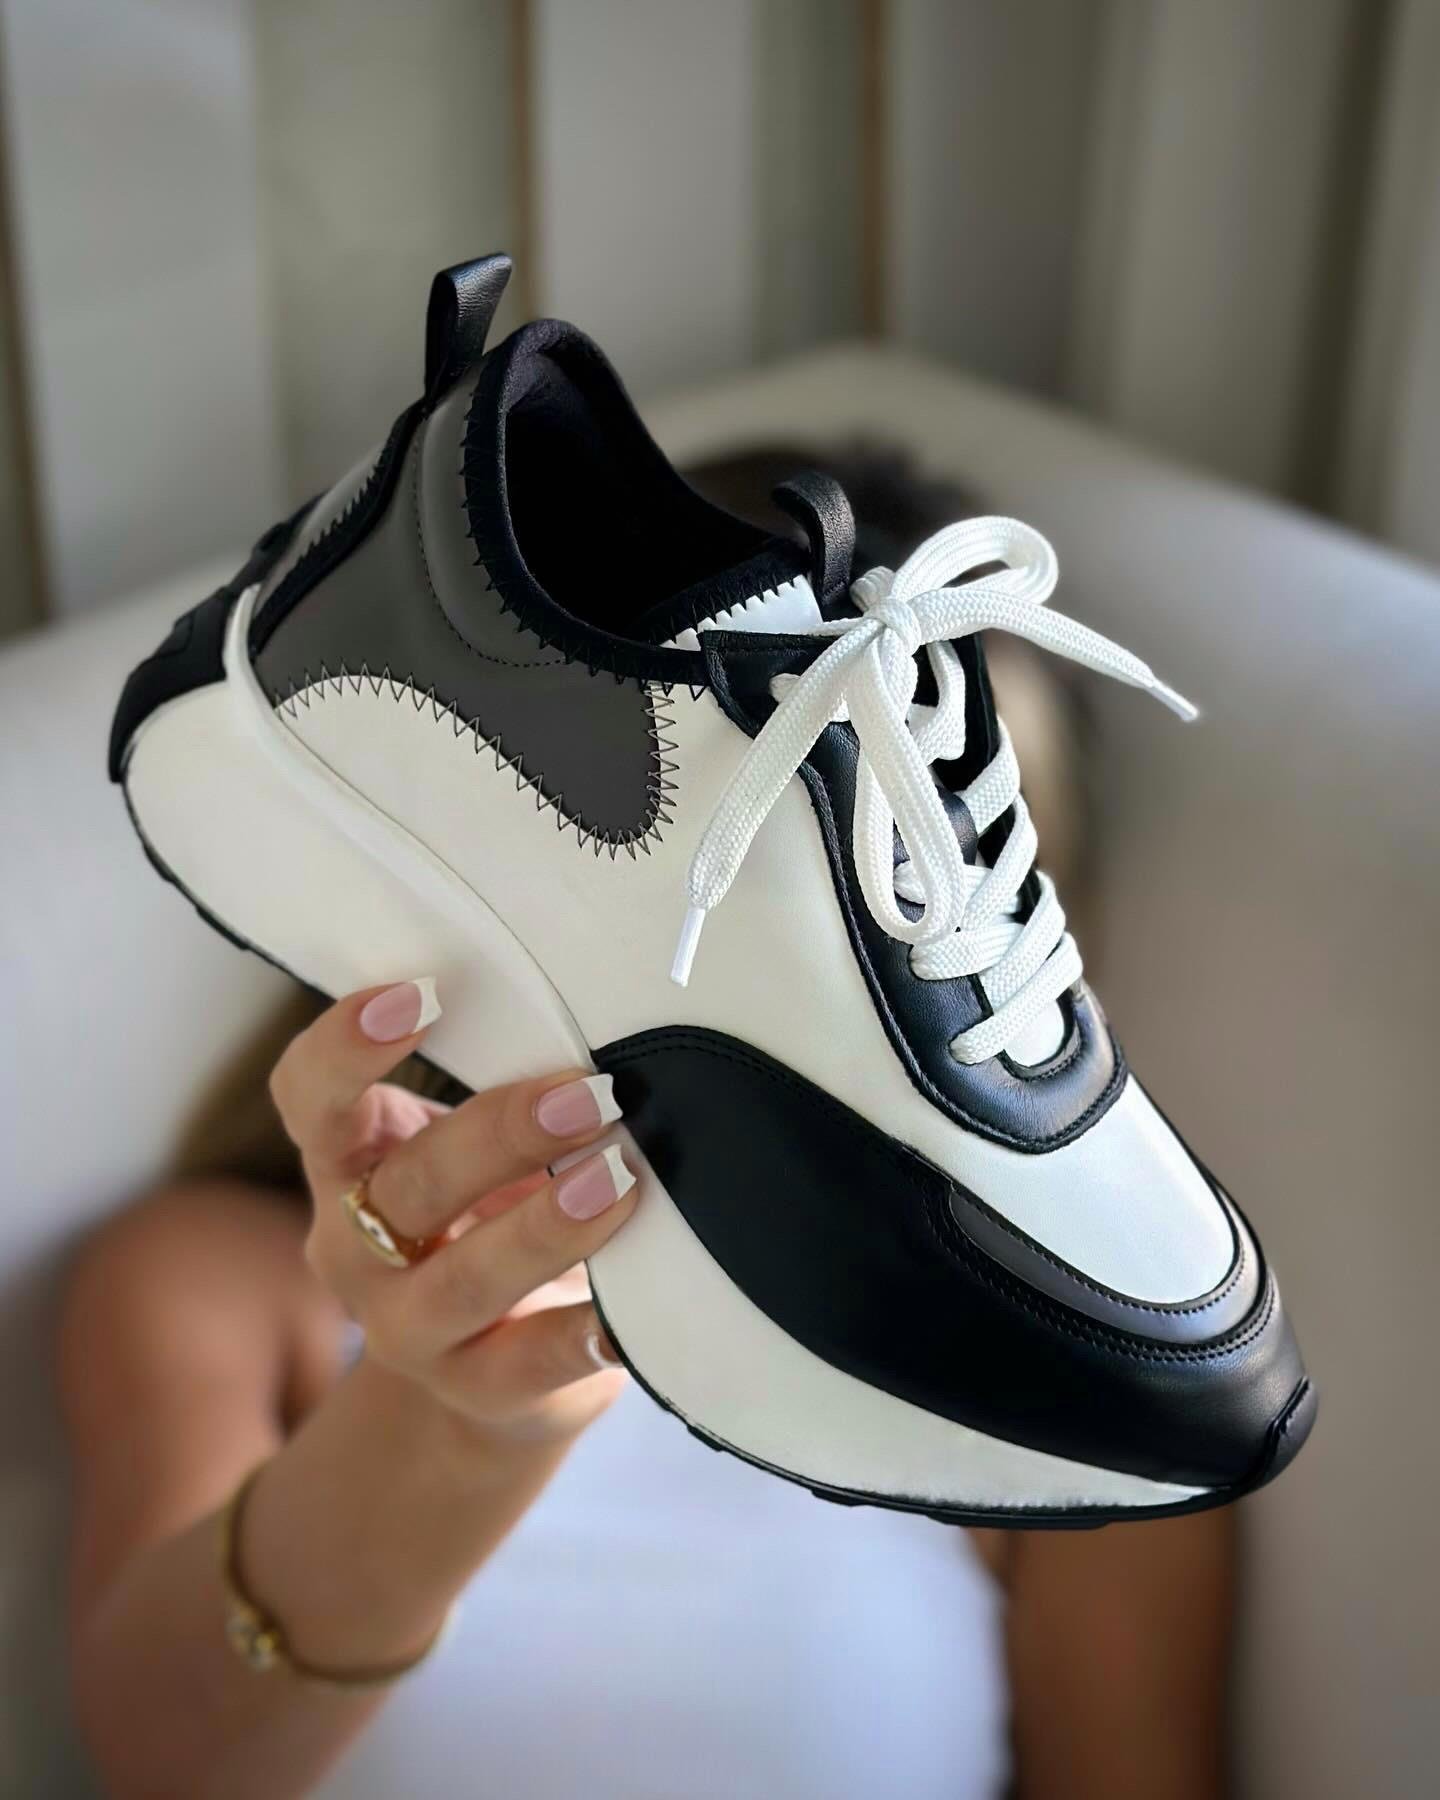 Chloe Kadın Spor Ayakkabı - Beyaz & Siyah